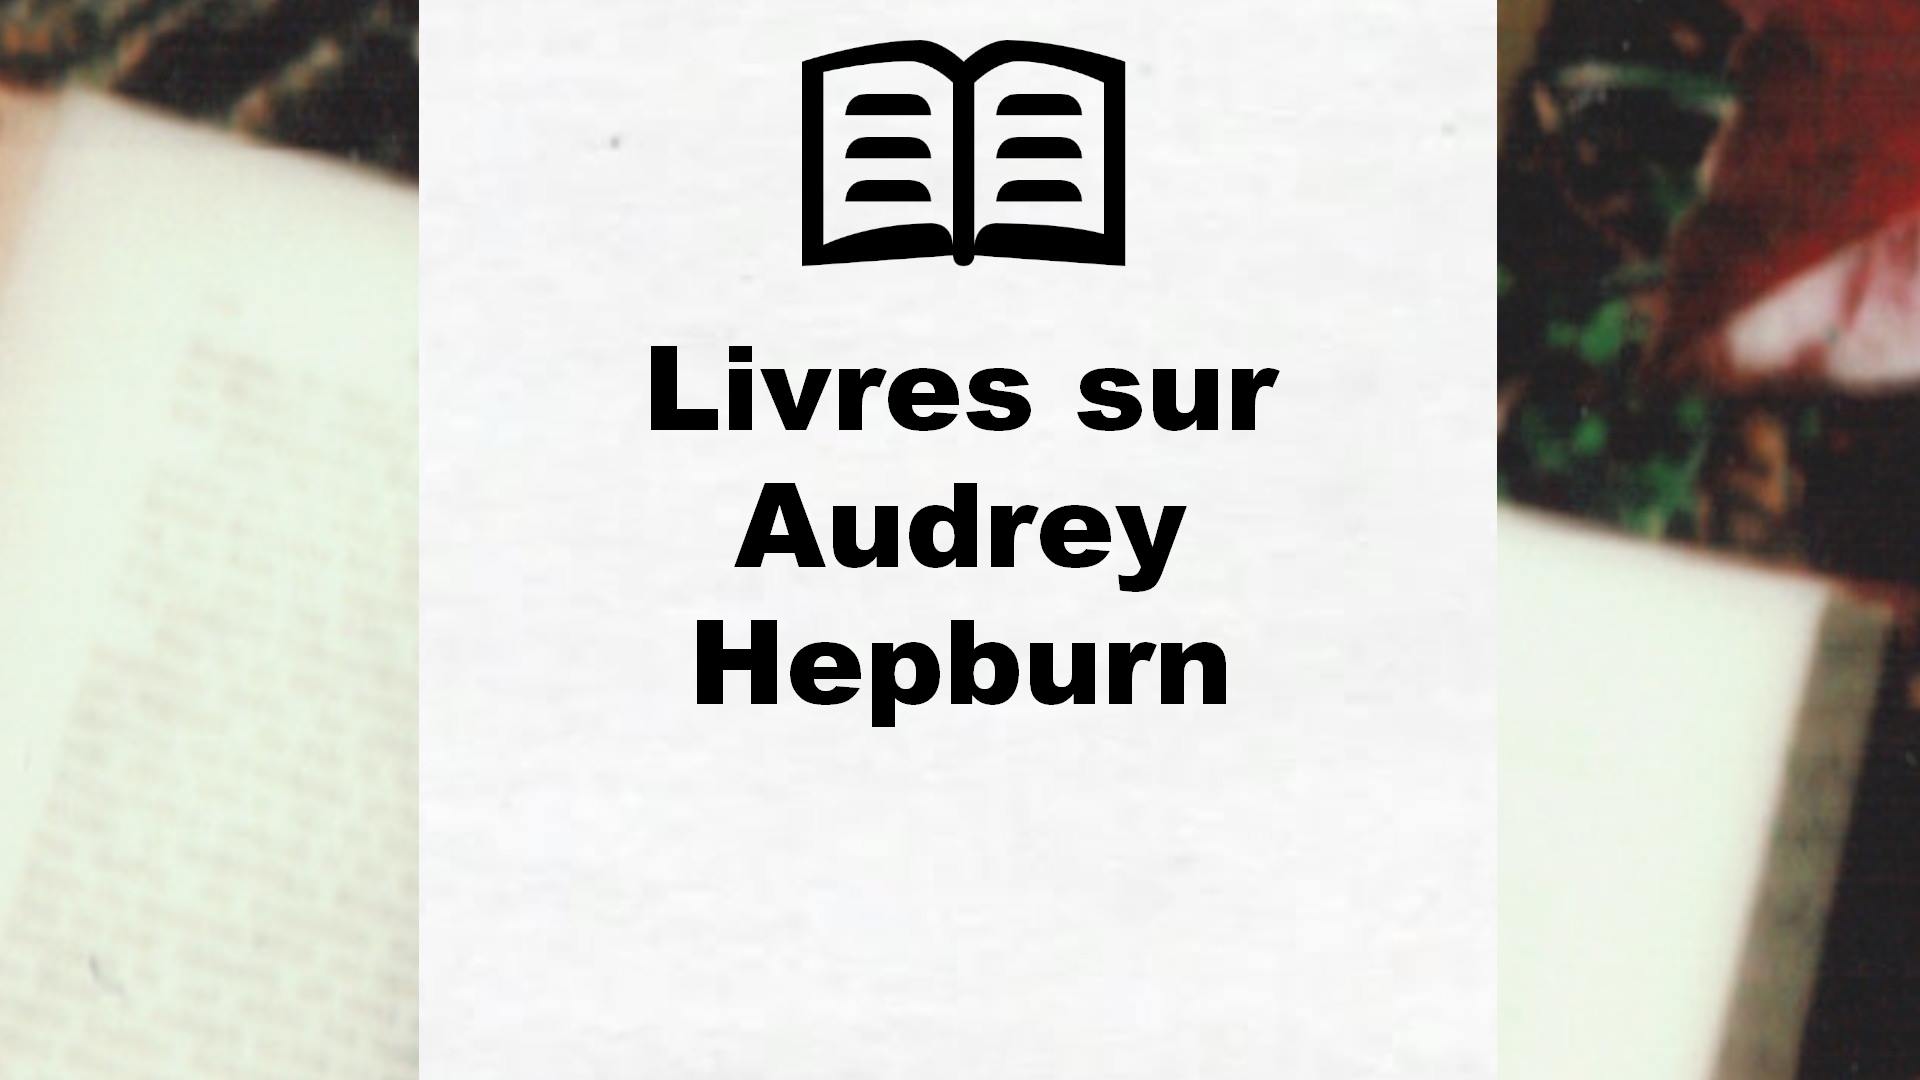 Livres sur Audrey Hepburn